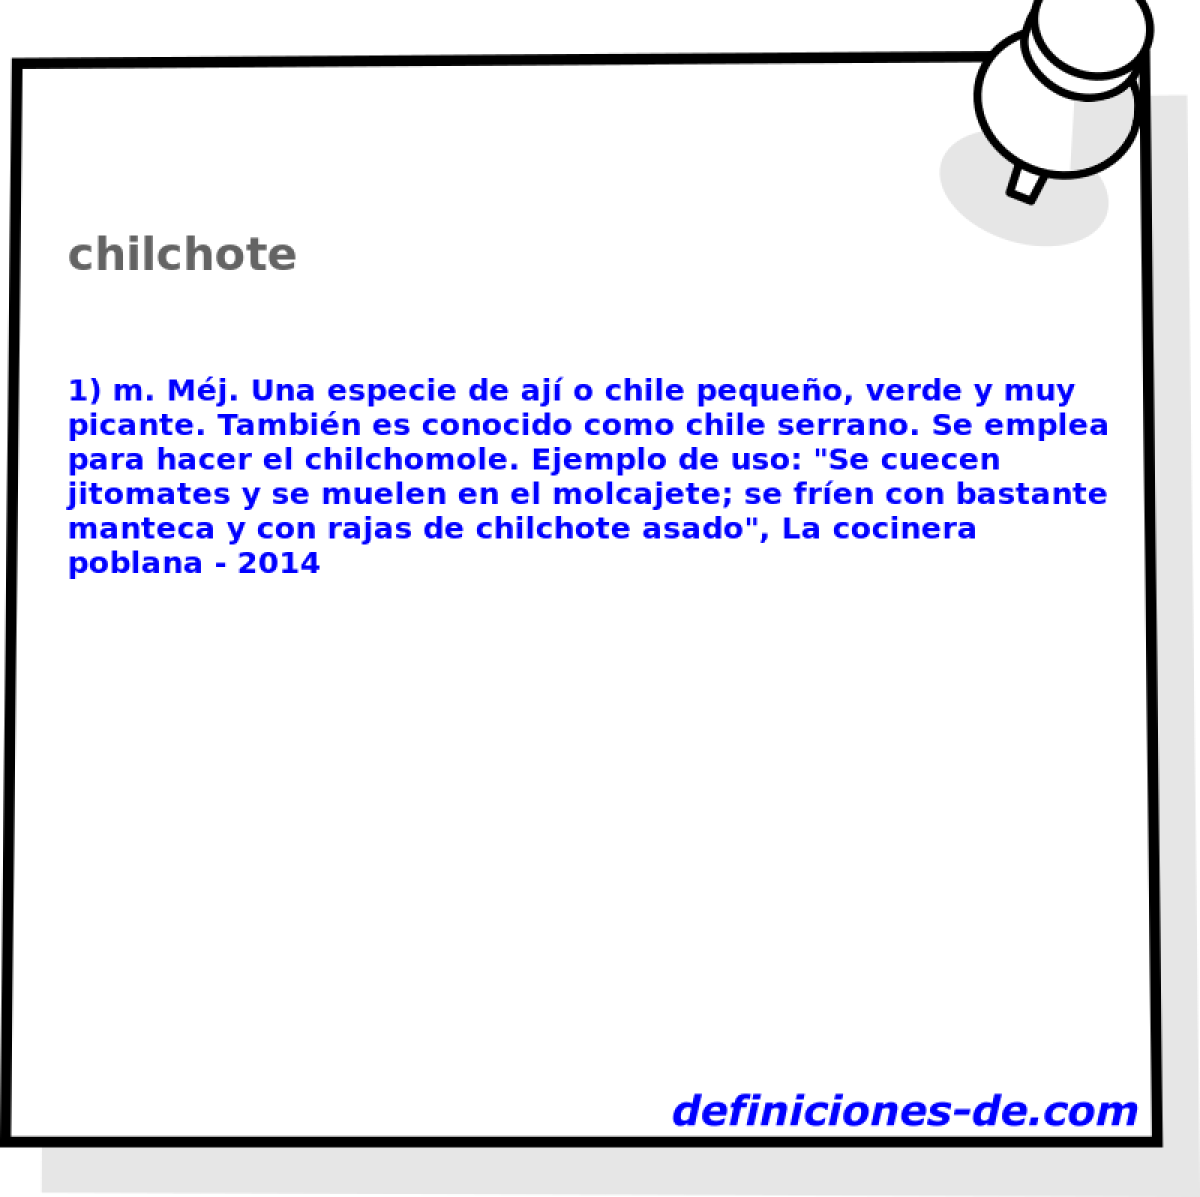 chilchote 